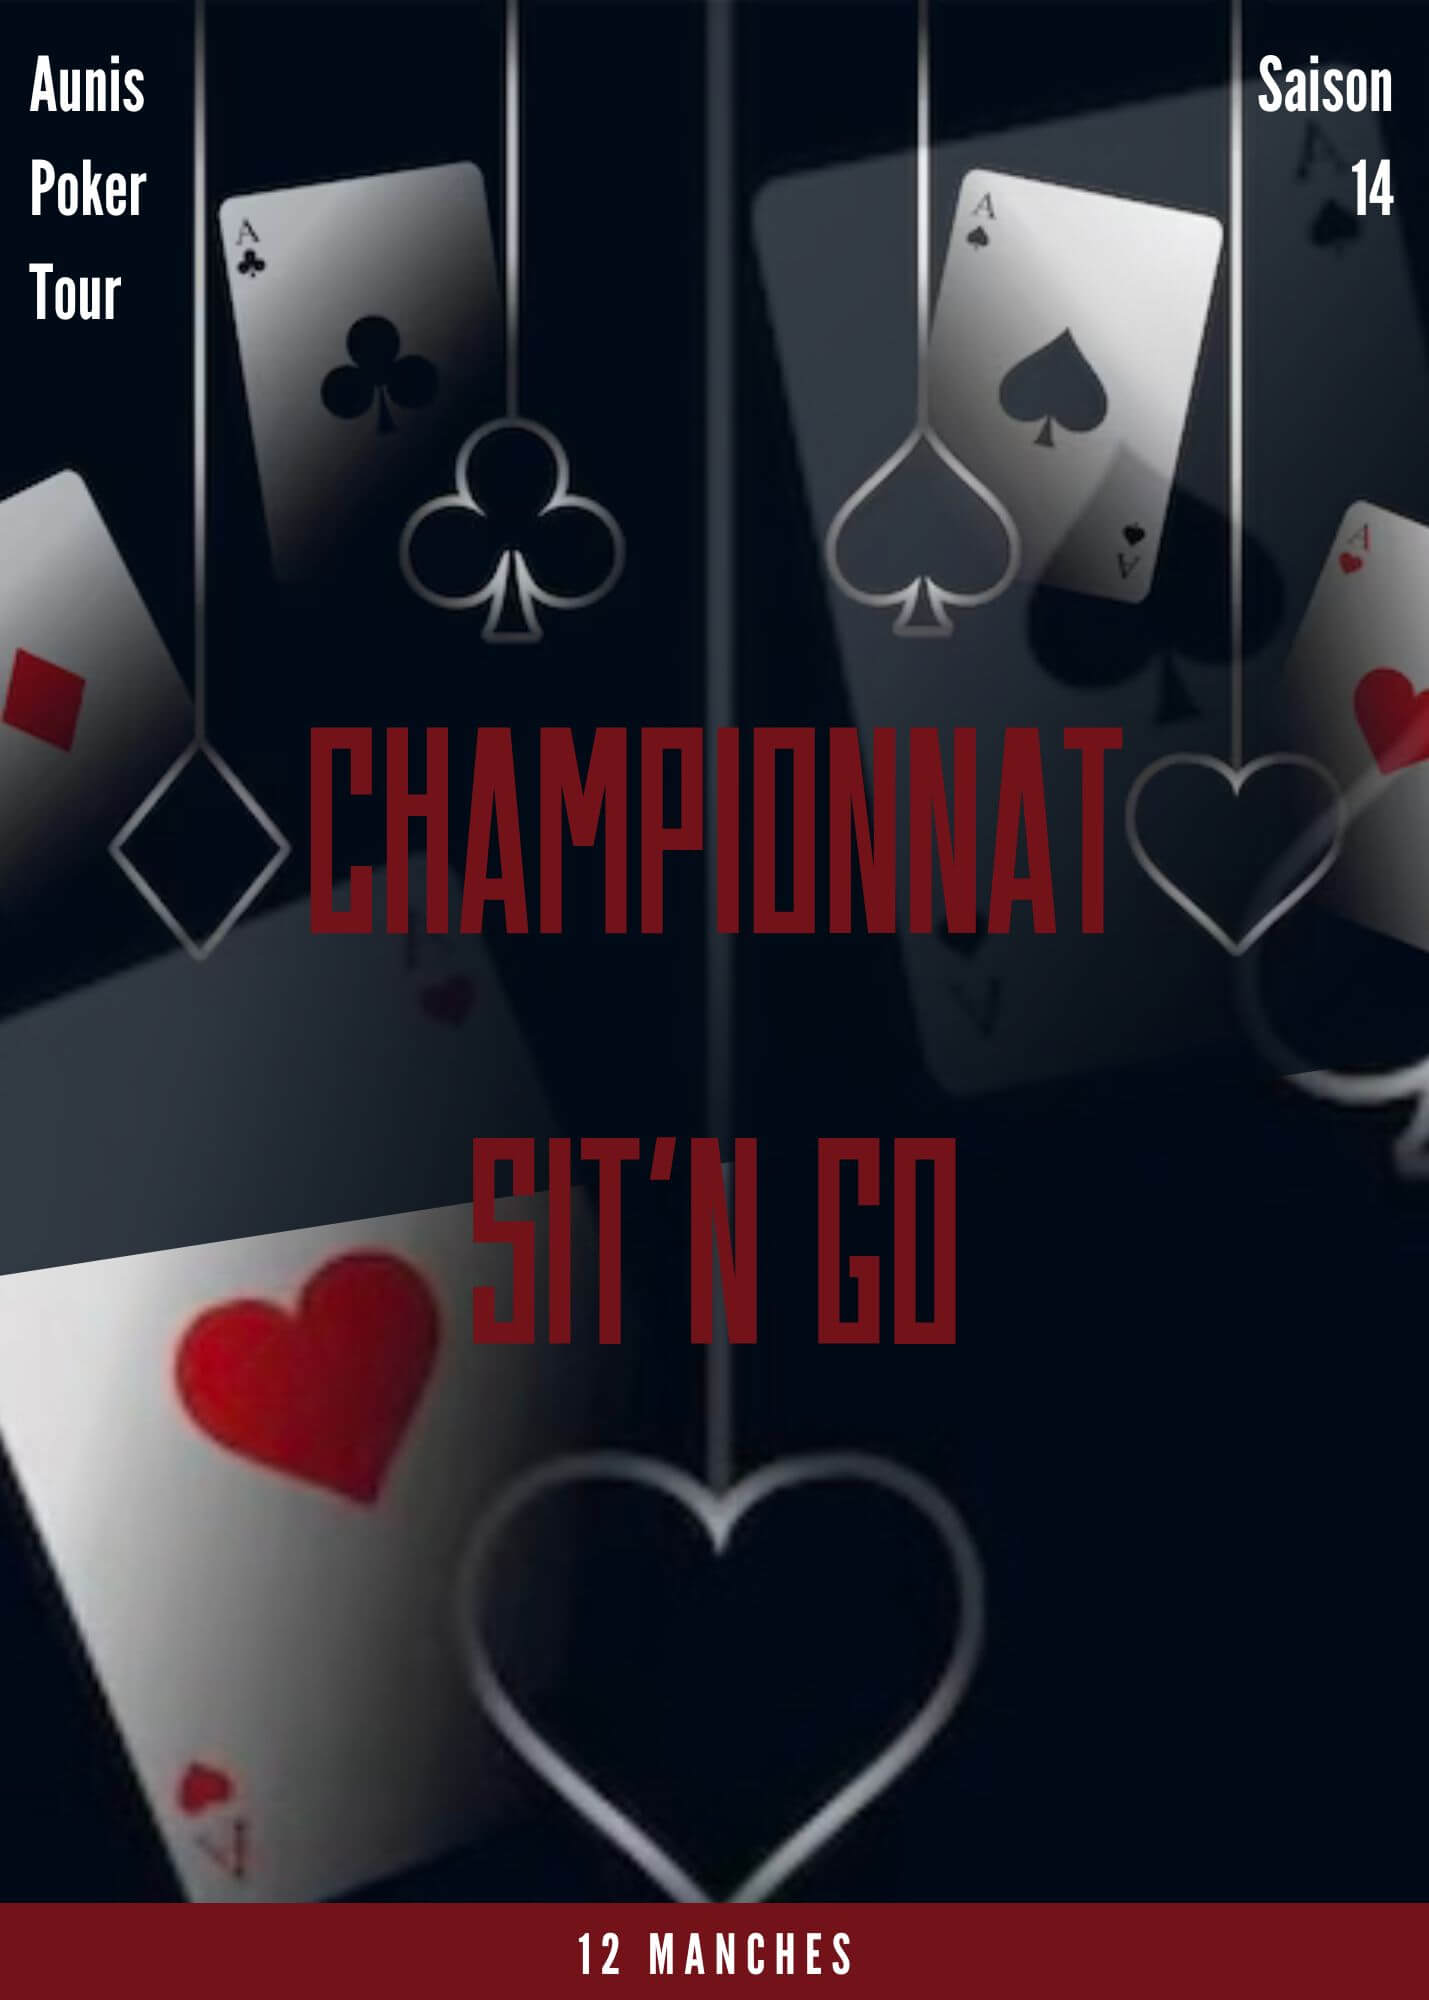 S14 – Championnat Sit&Go #11